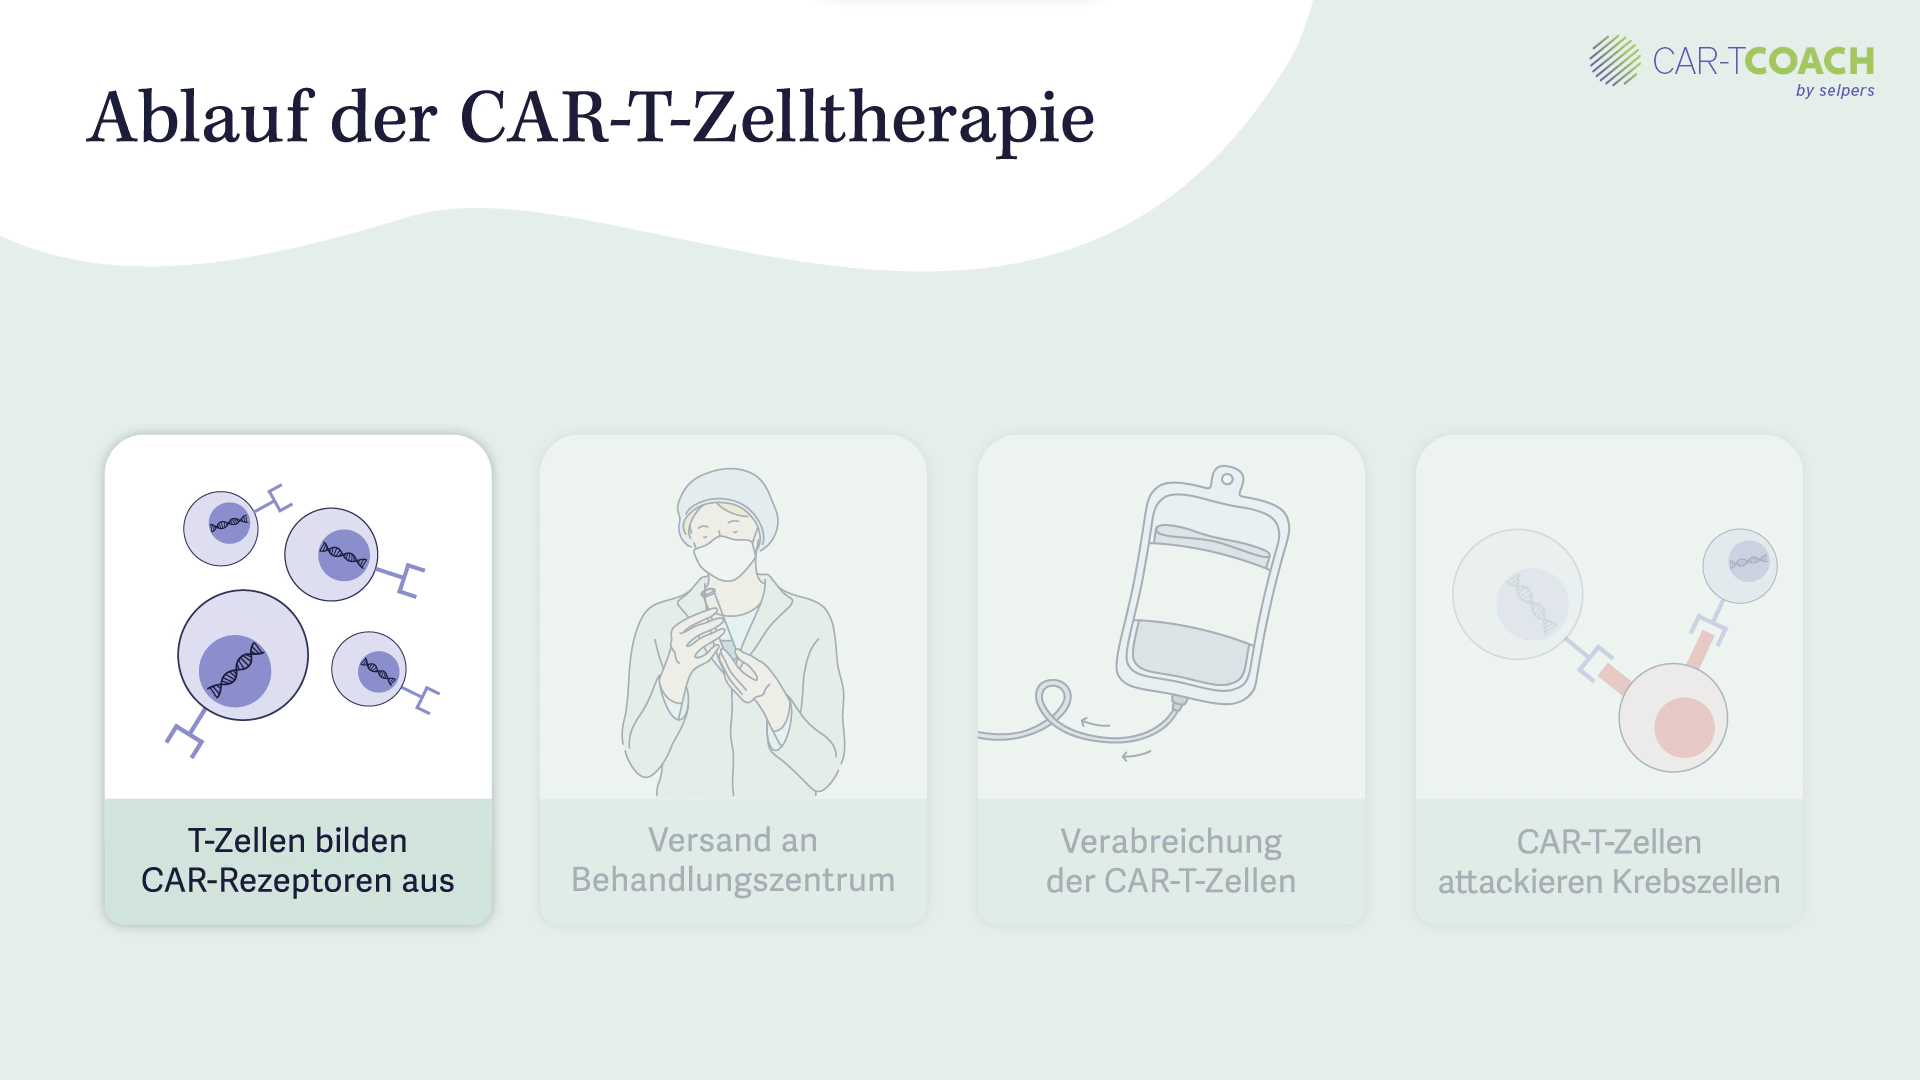 Ablauf der CAR-T-Zelltherapie: Infusion der T-Zellen mit CAR-T-Rezeptor